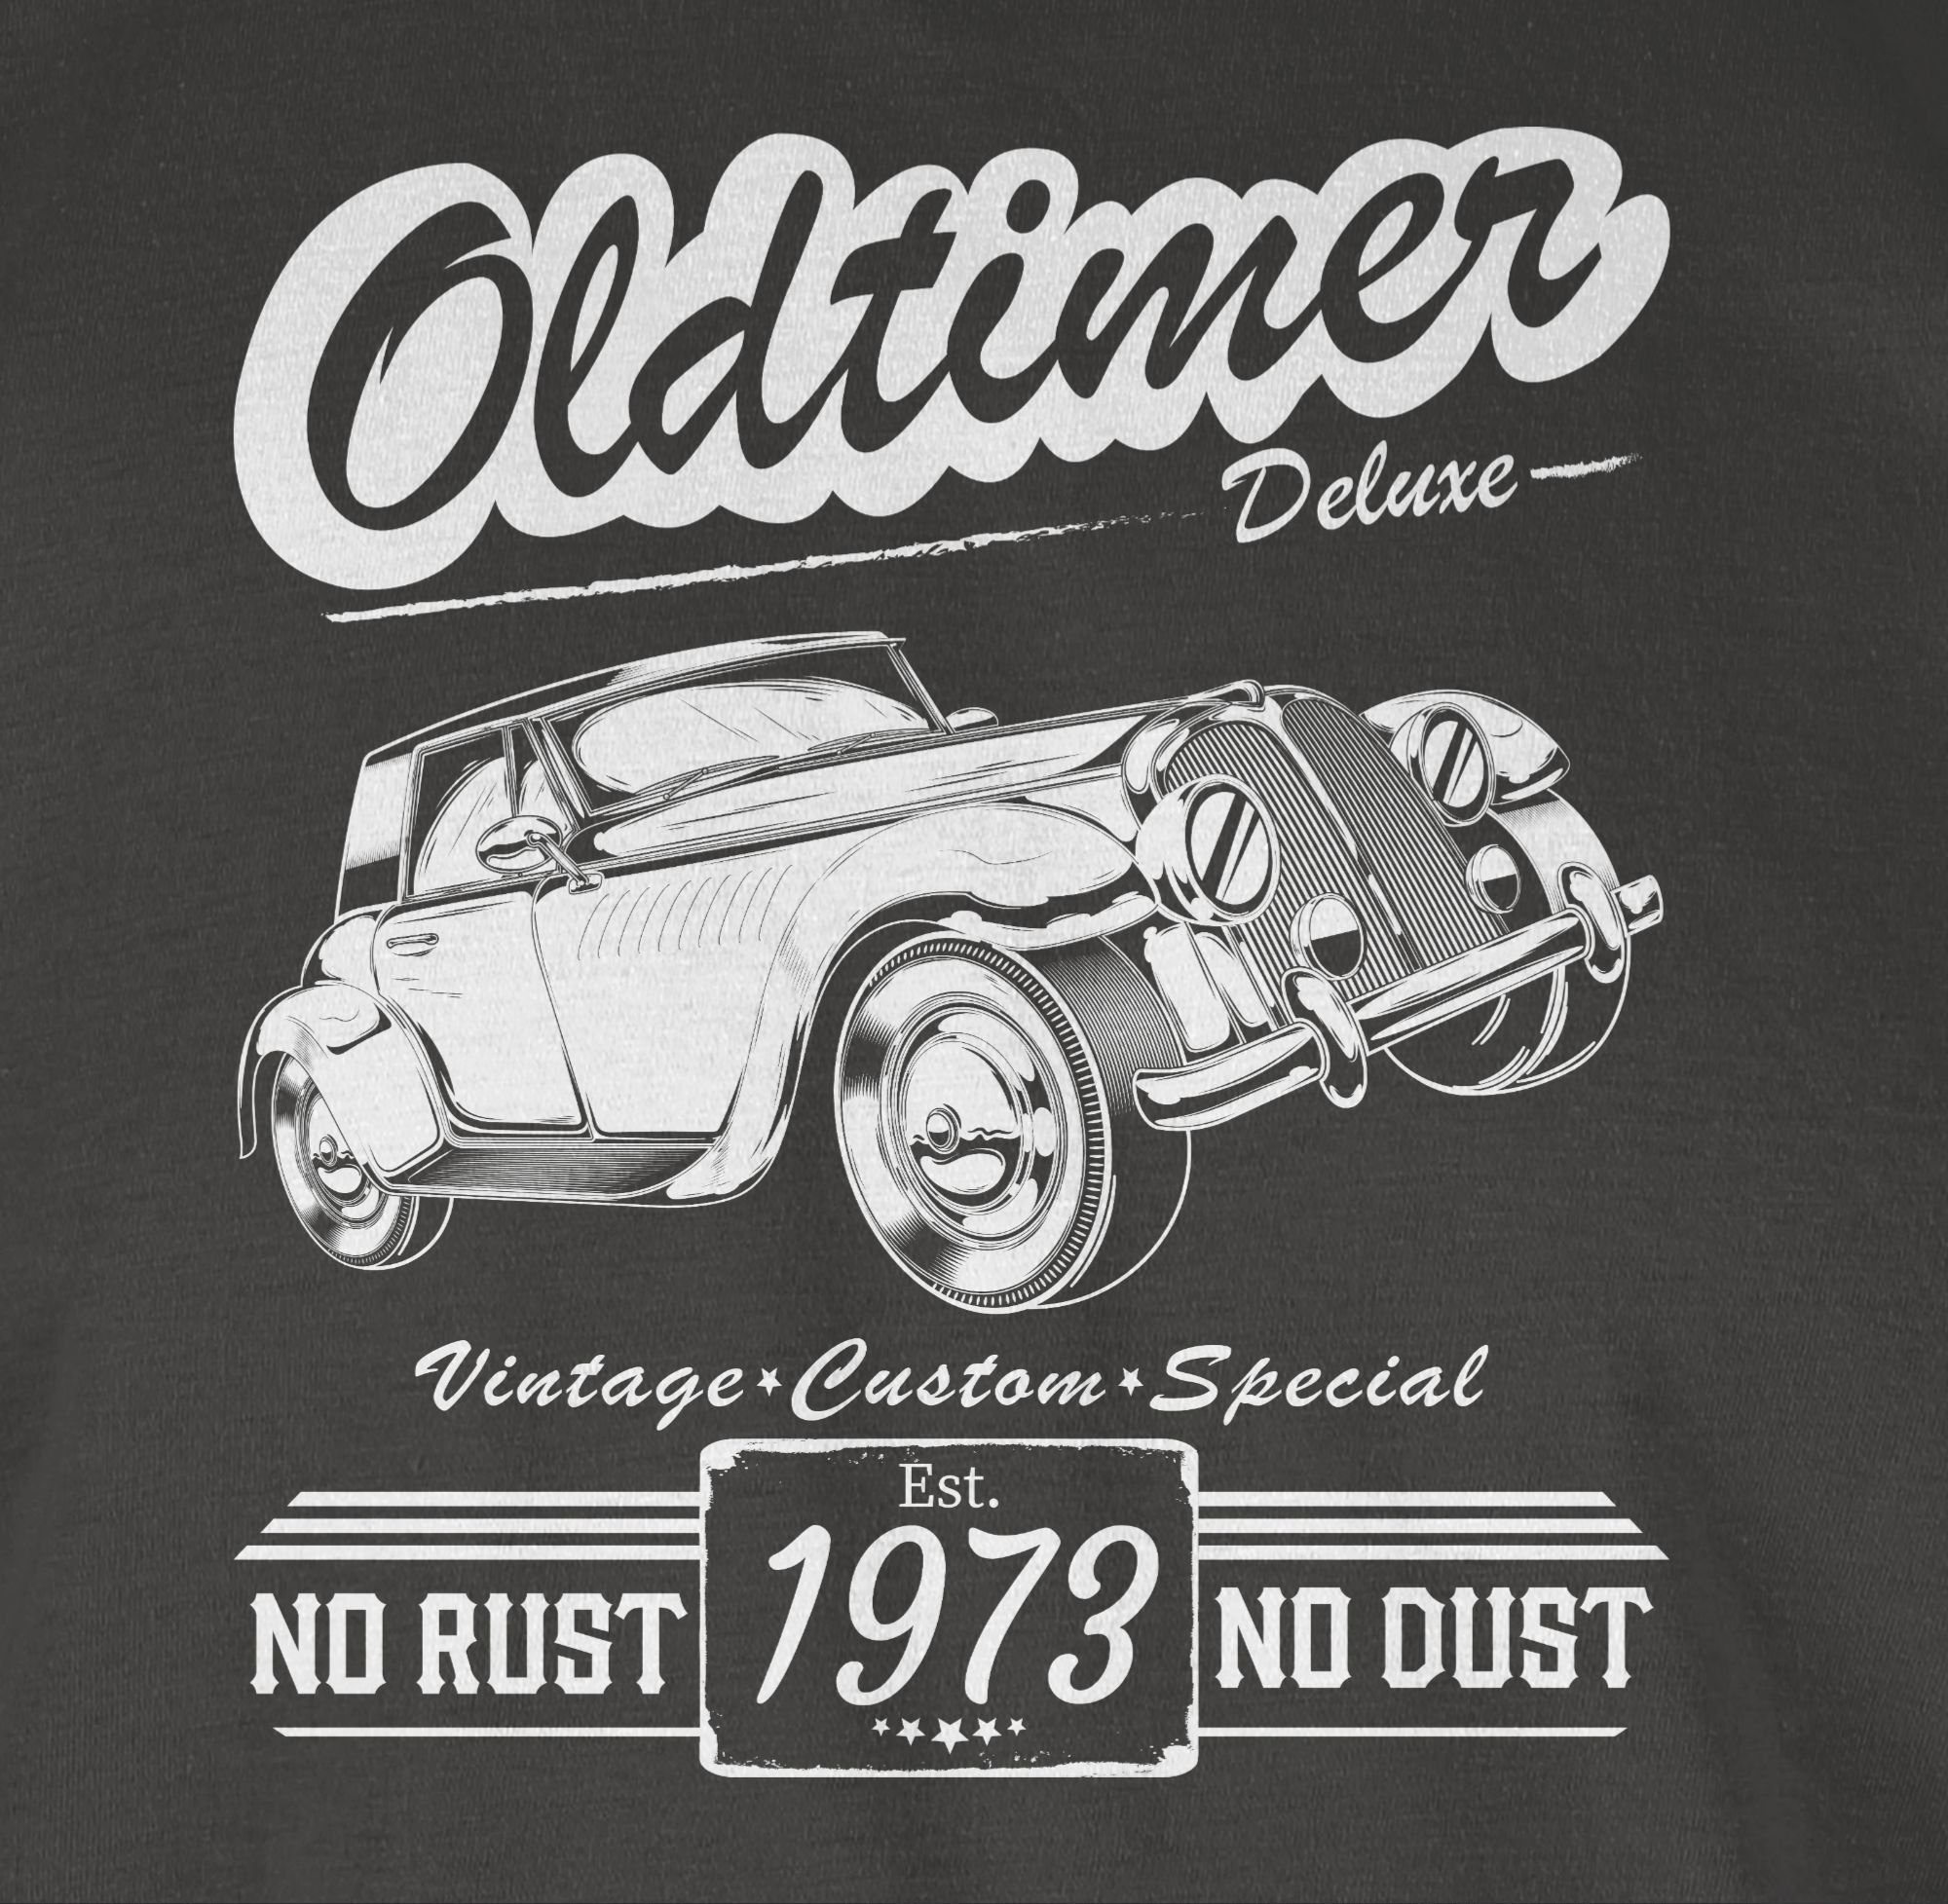 Shirtracer T-Shirt Fünfzigster Oldtimer Baujahr 50. Dunkelgrau 1973 Geburtstag 03